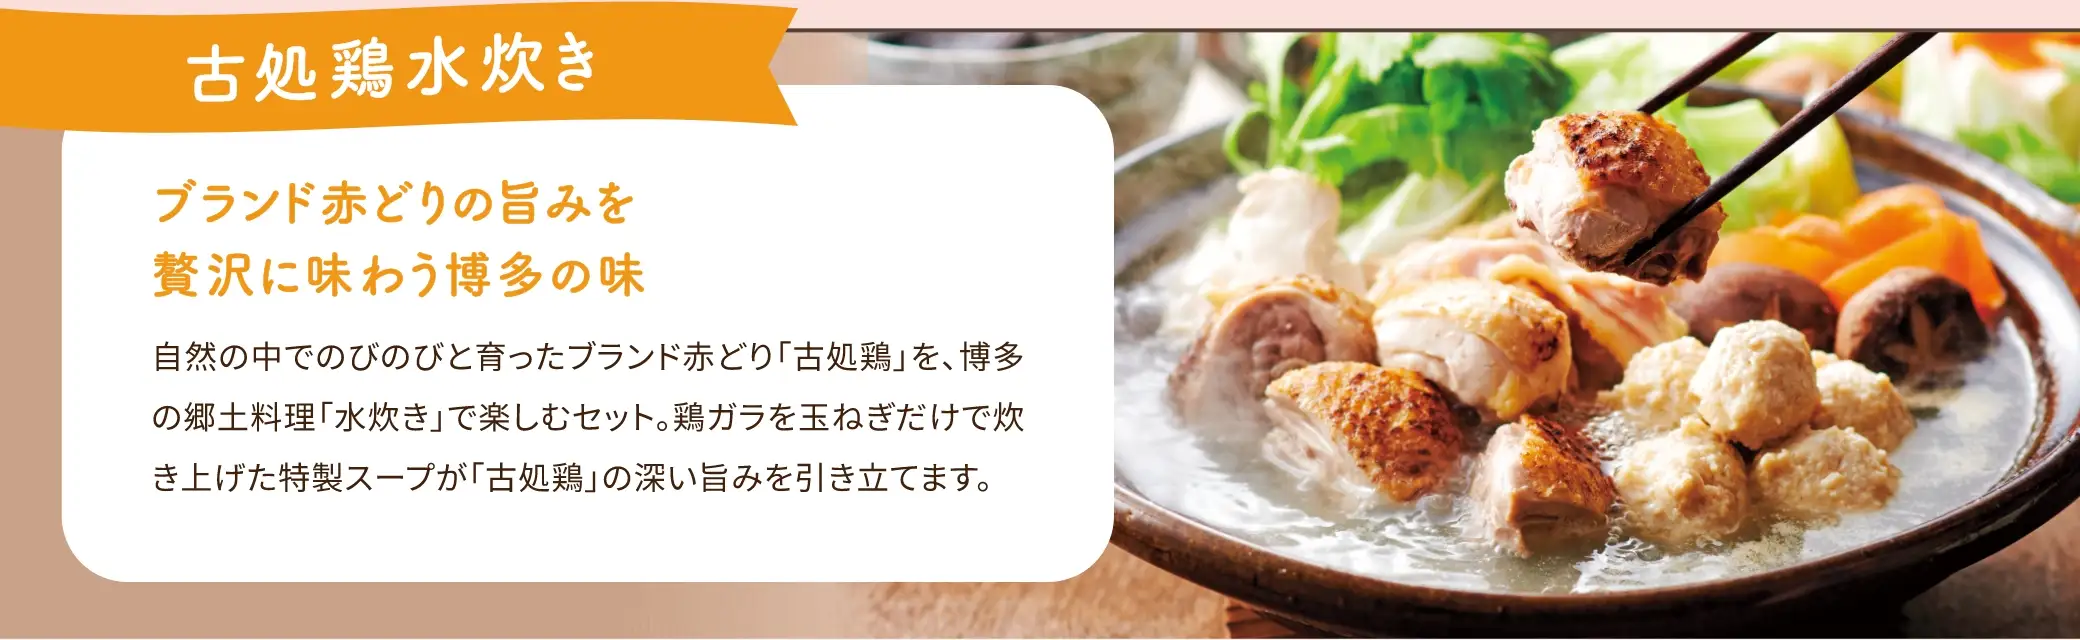 古処鶏水炊きセットは、ブランド赤どりの旨みを贅沢に味わうことができます。